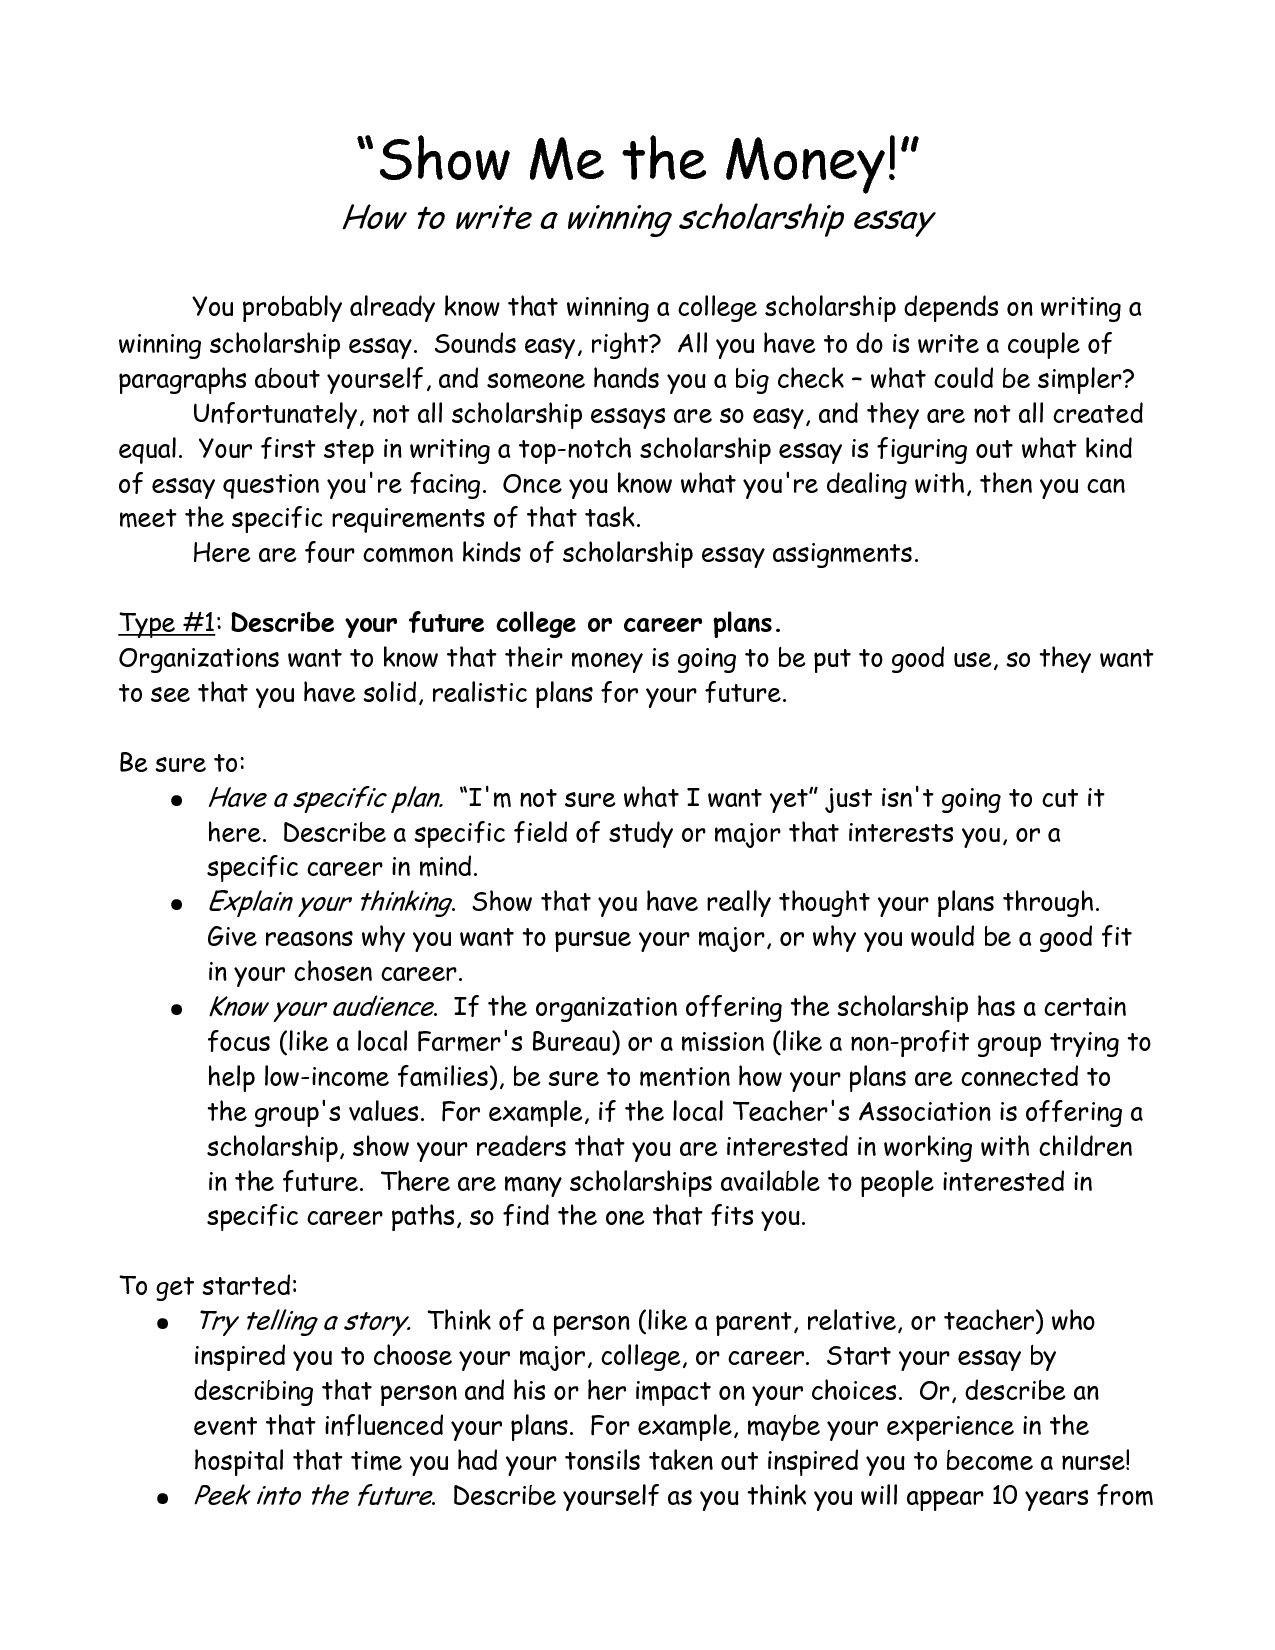 Scholarship essay layouts